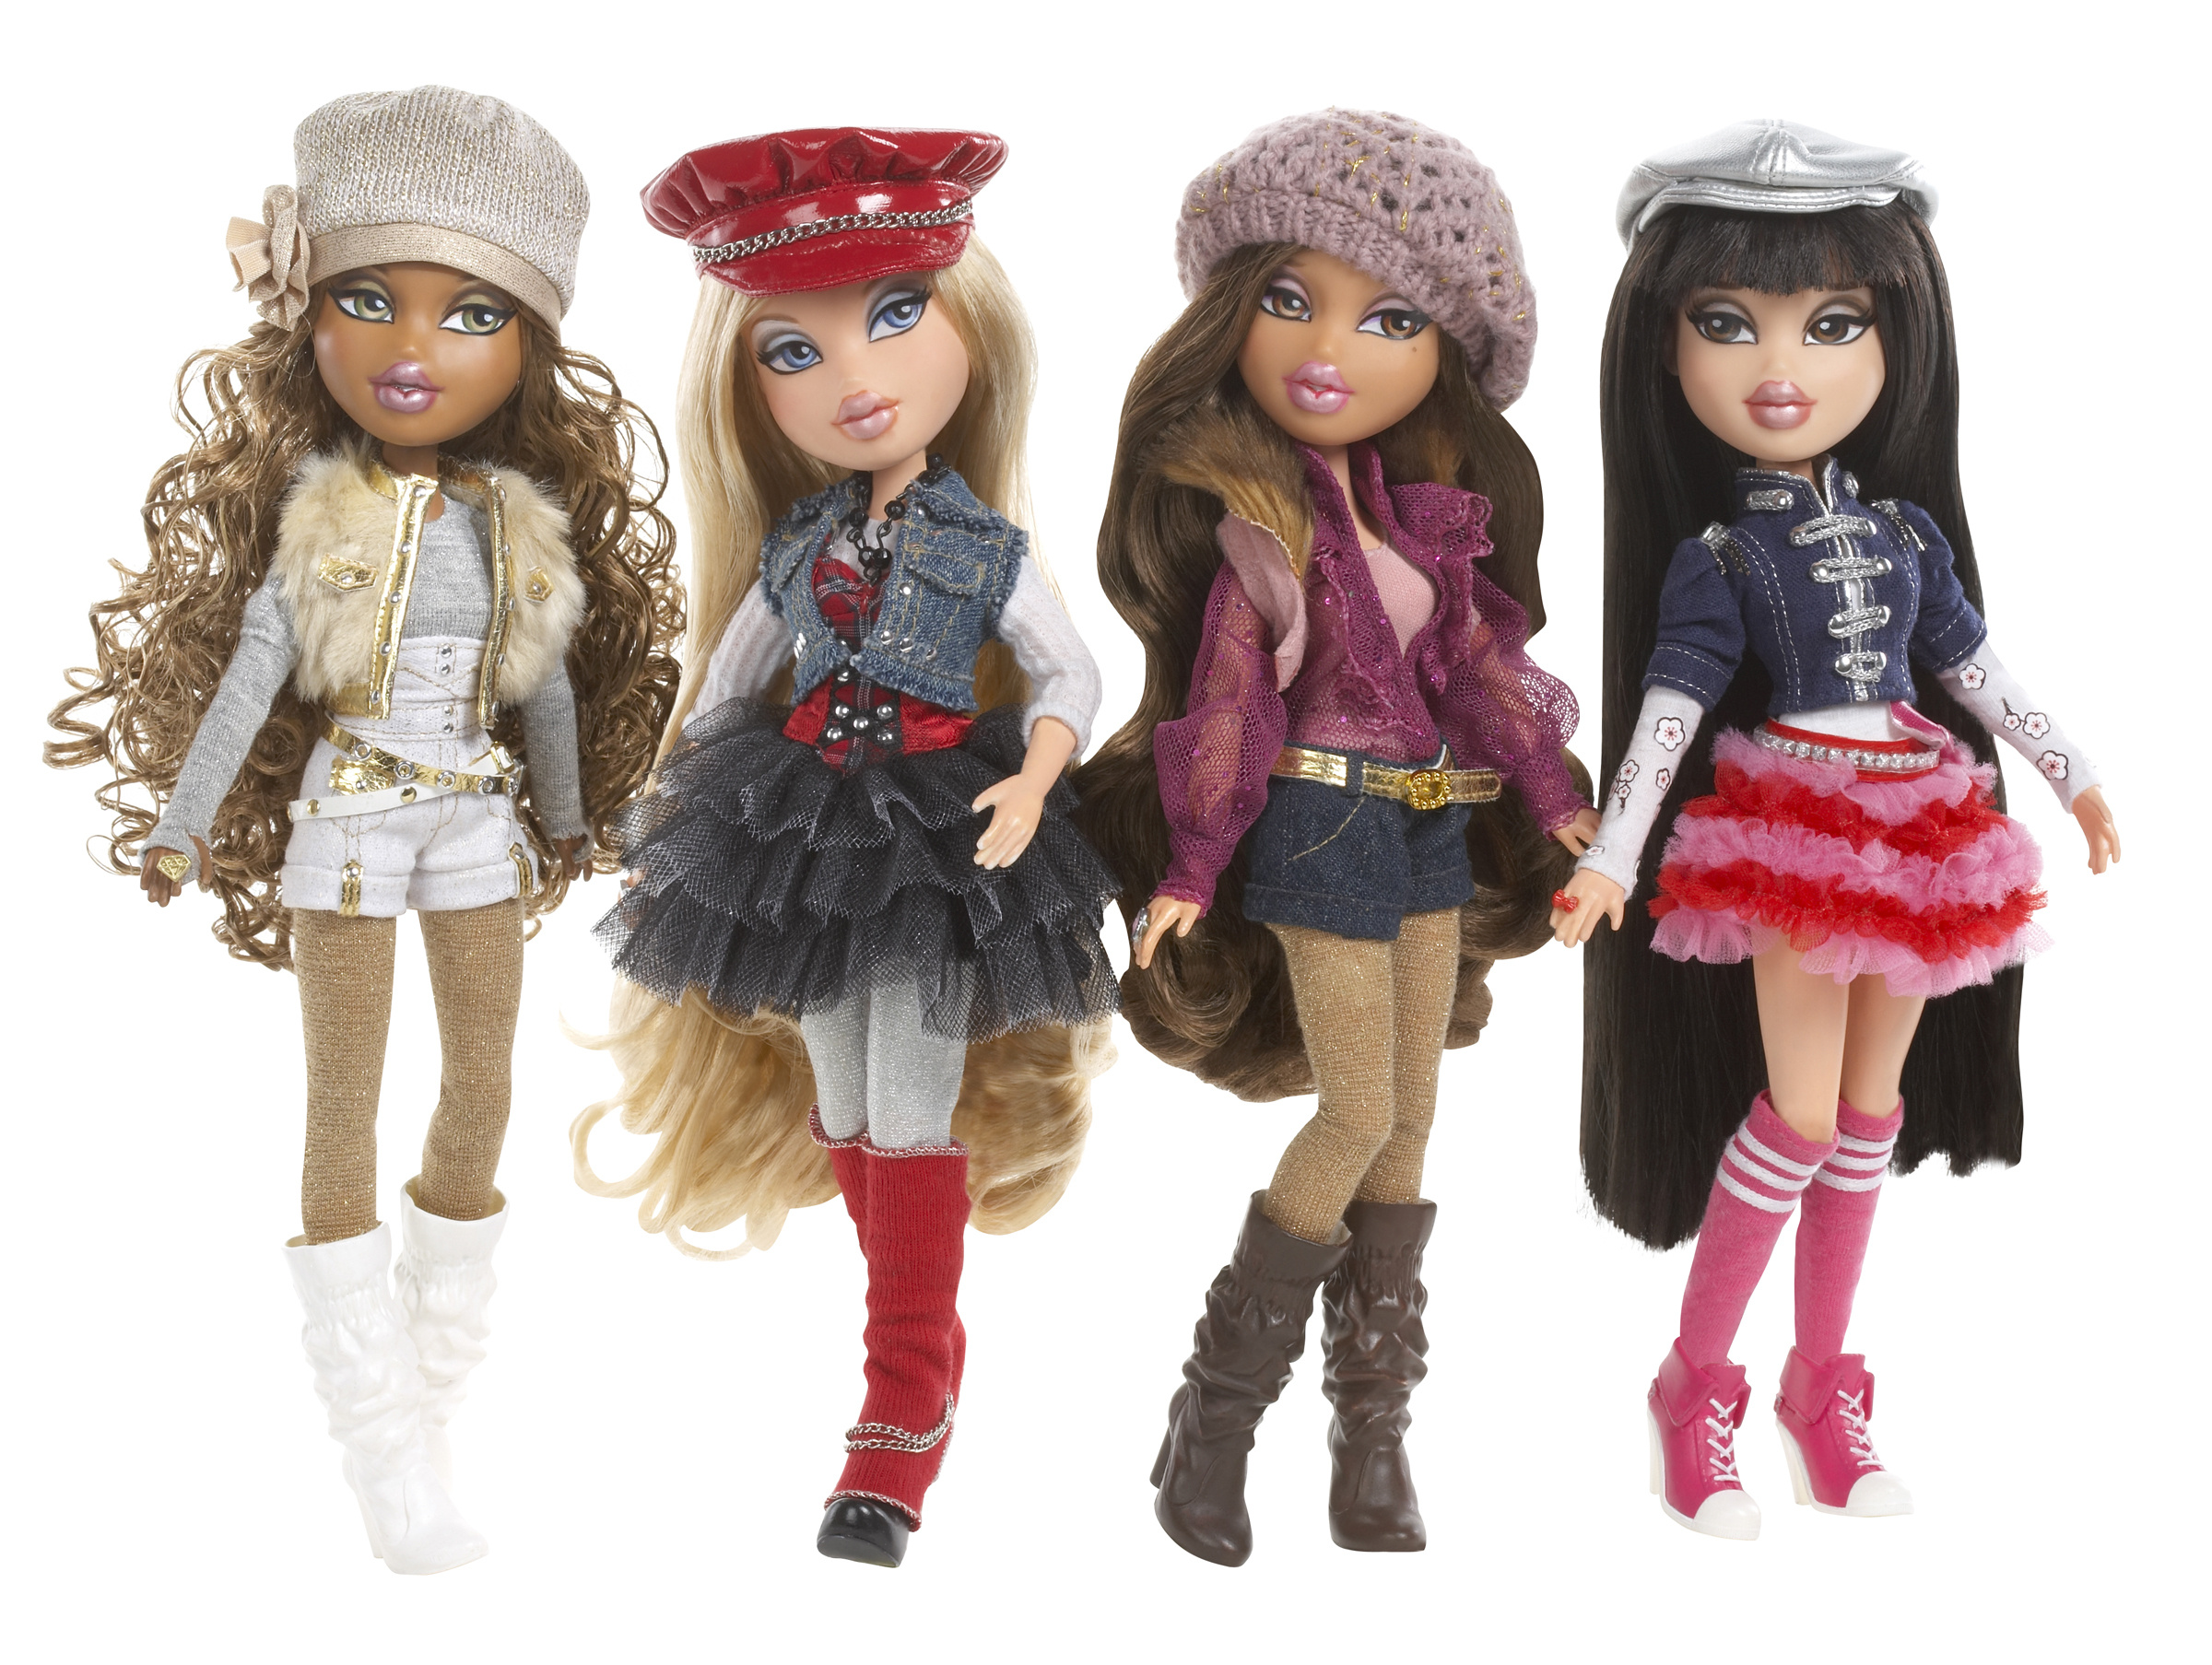 Bratz Dolls, YouTube homepage takeover, The Toy Book, Bratz dolls, 2400x1810 HD Desktop